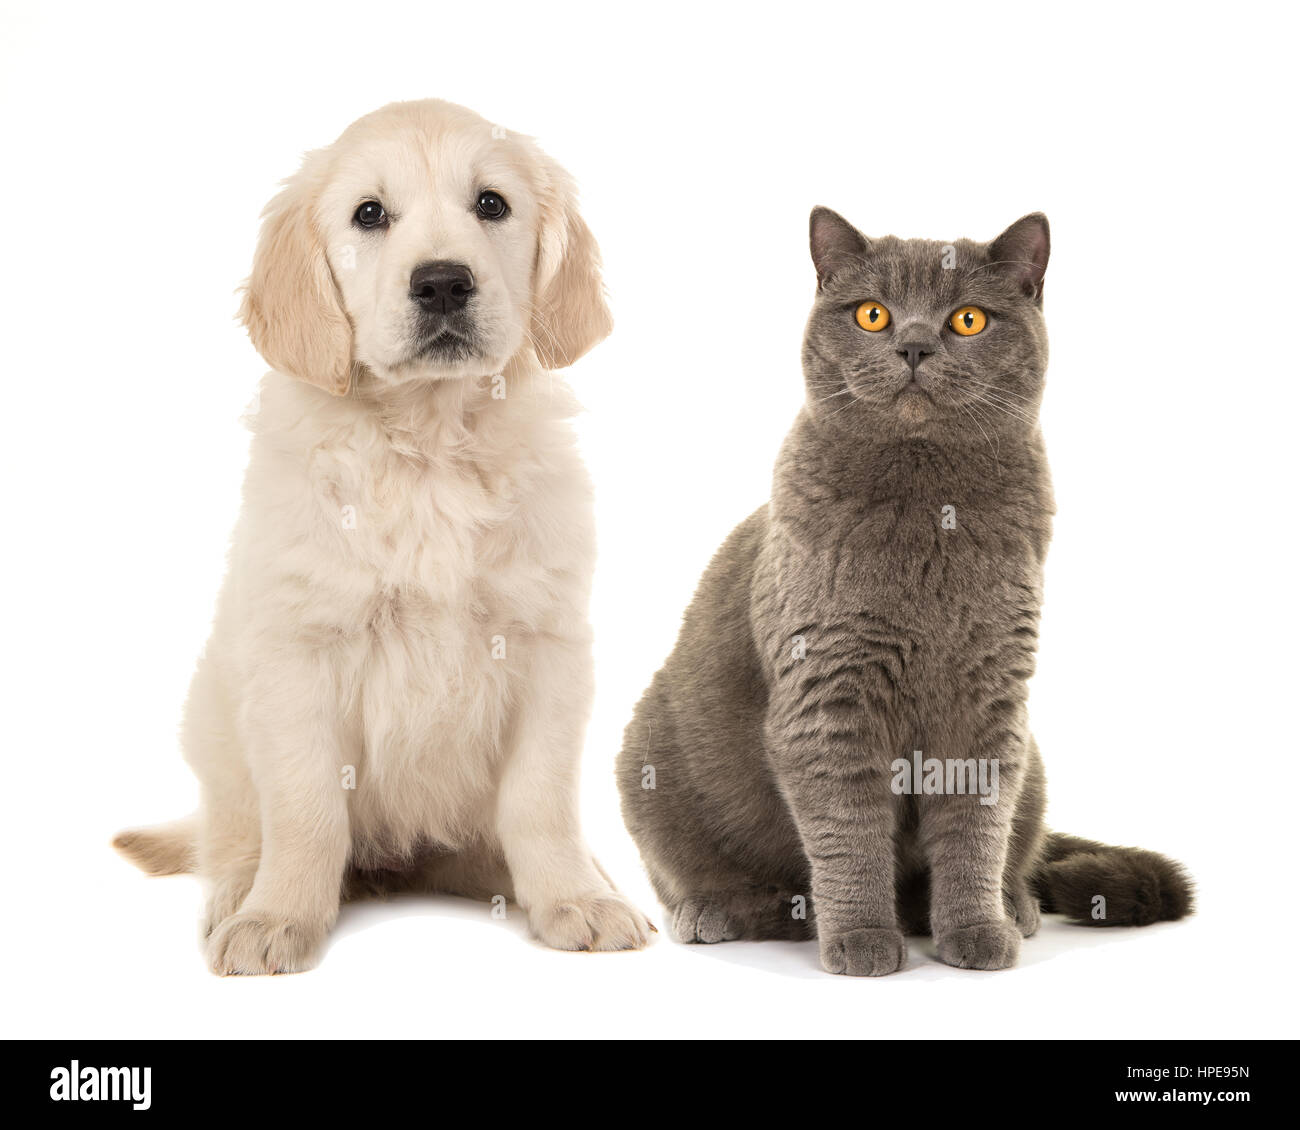 Bionda golden retriever cucciolo di cane e grigio british capelli corti cat seduto rivolto verso la telecamera isolata su uno sfondo bianco Foto Stock